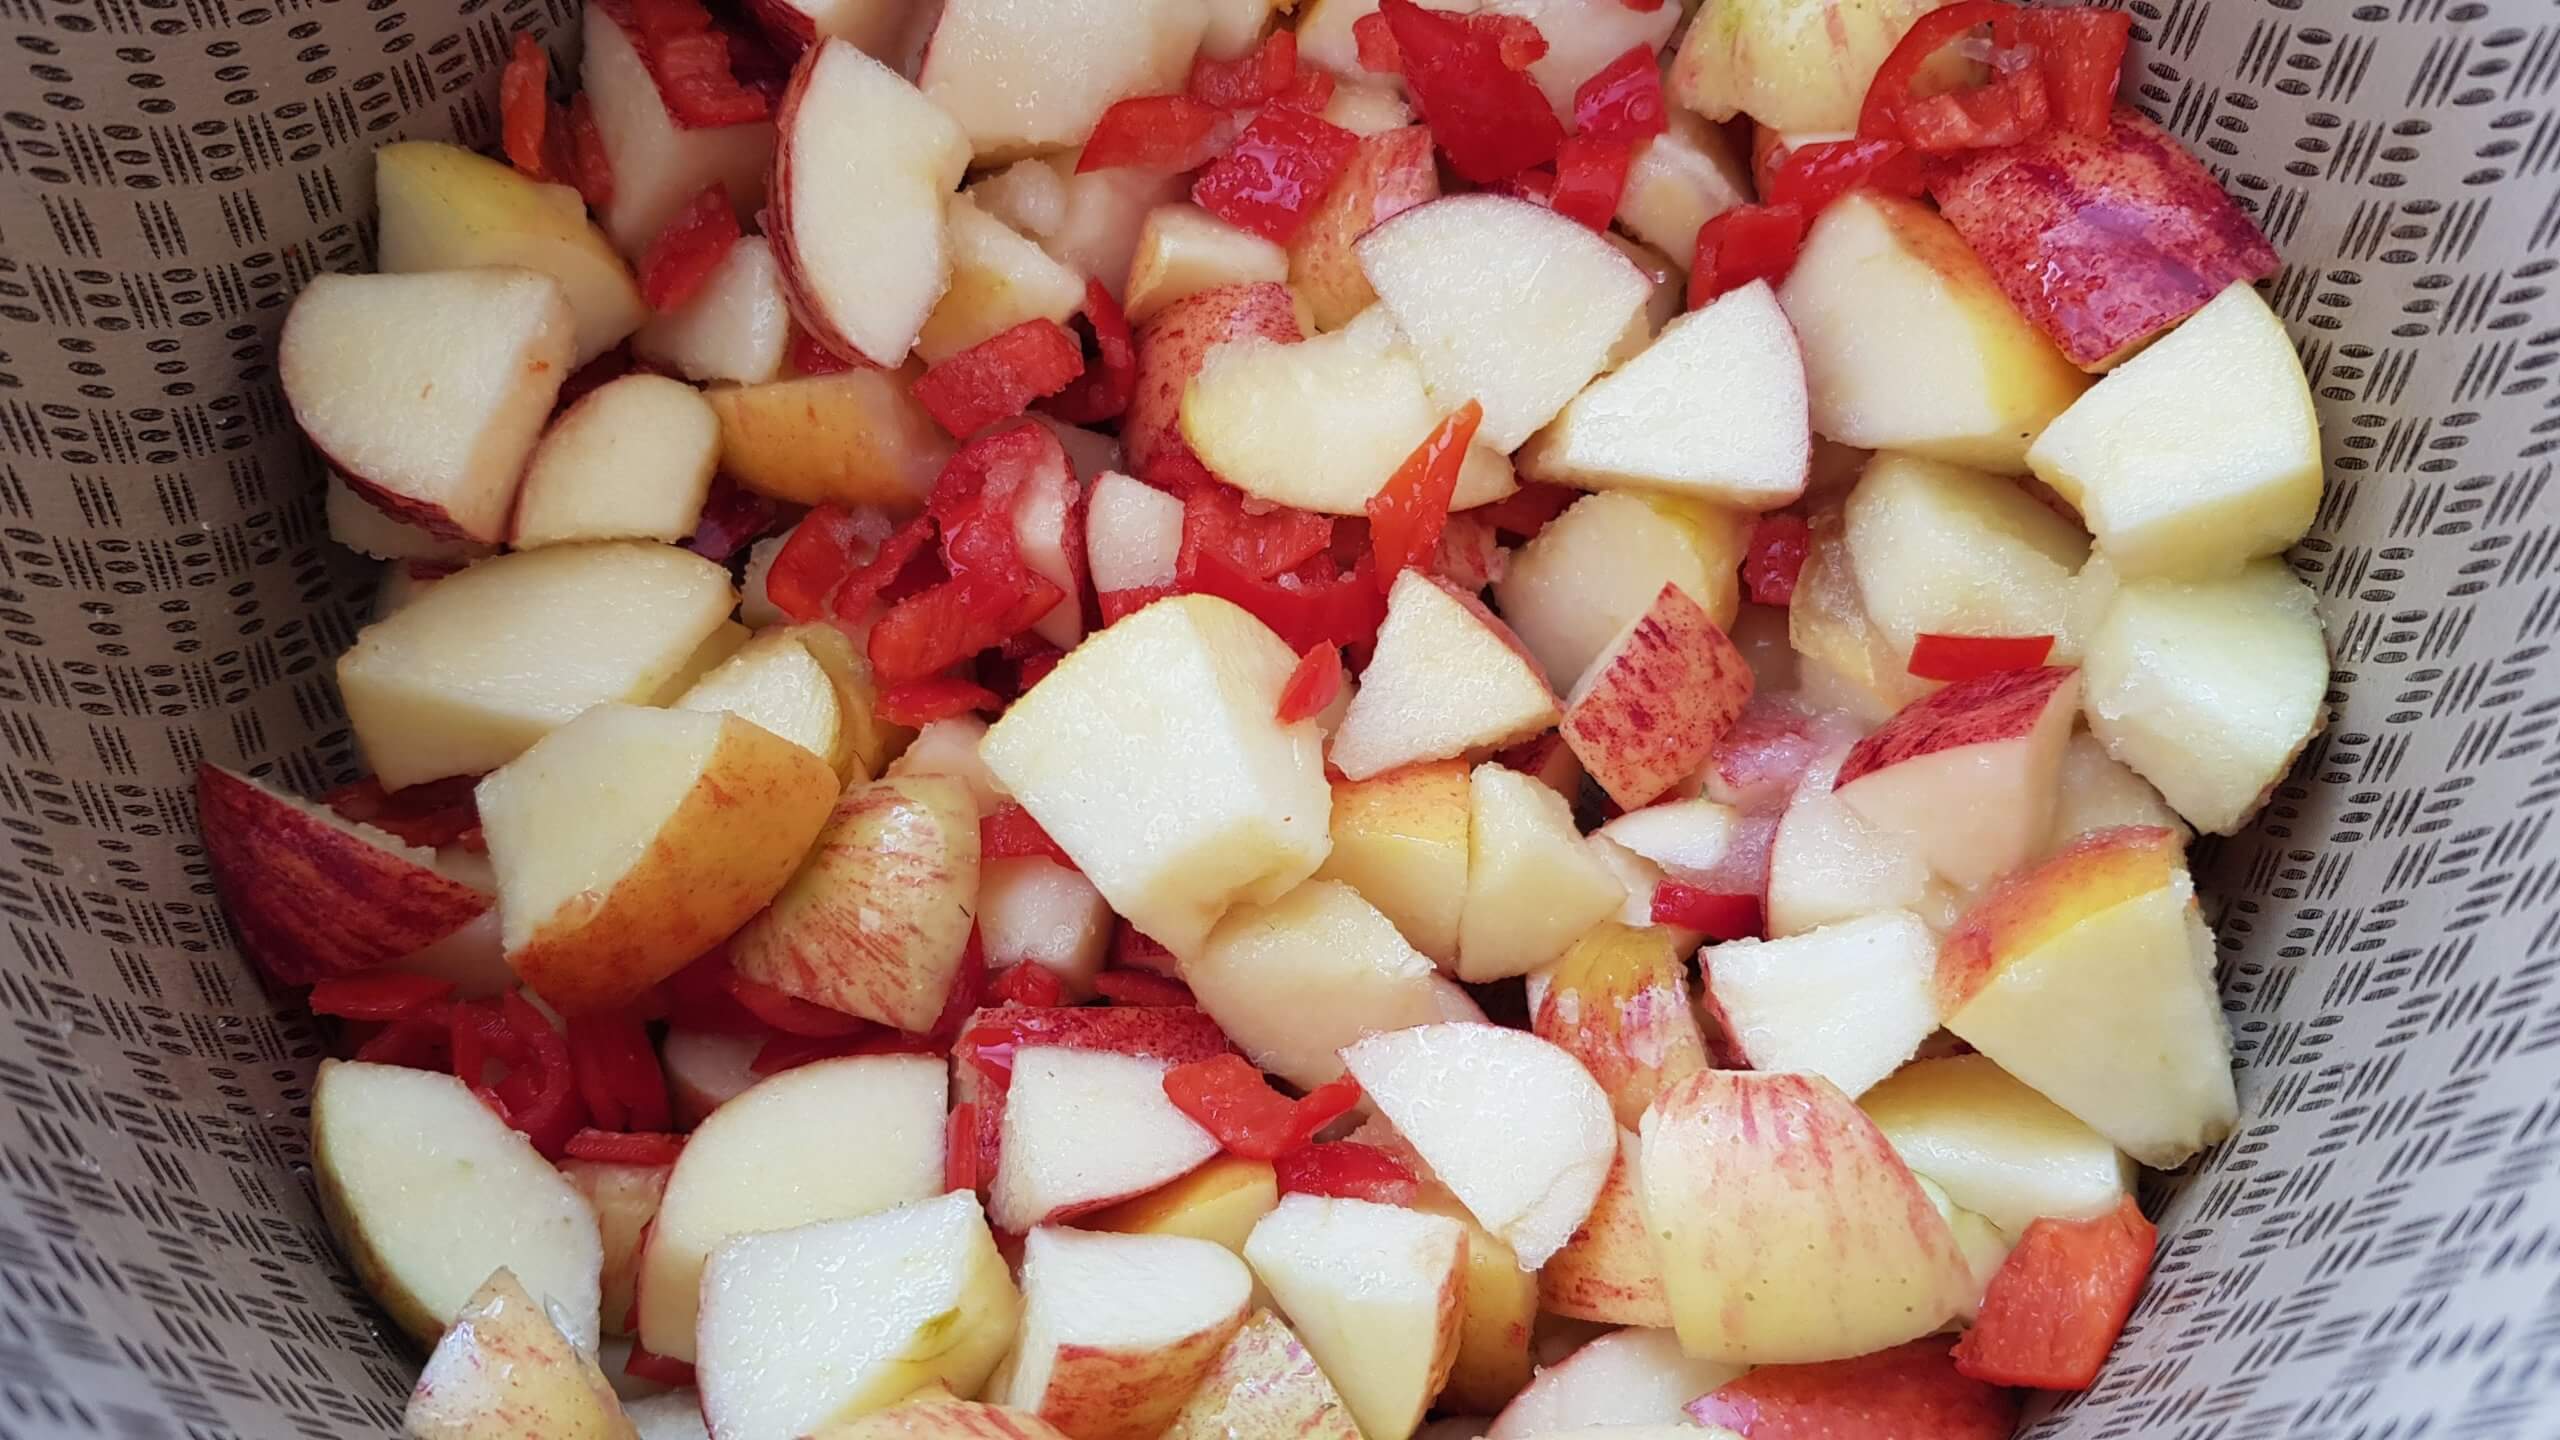 Como fazer geleia de maçã com pimenta?